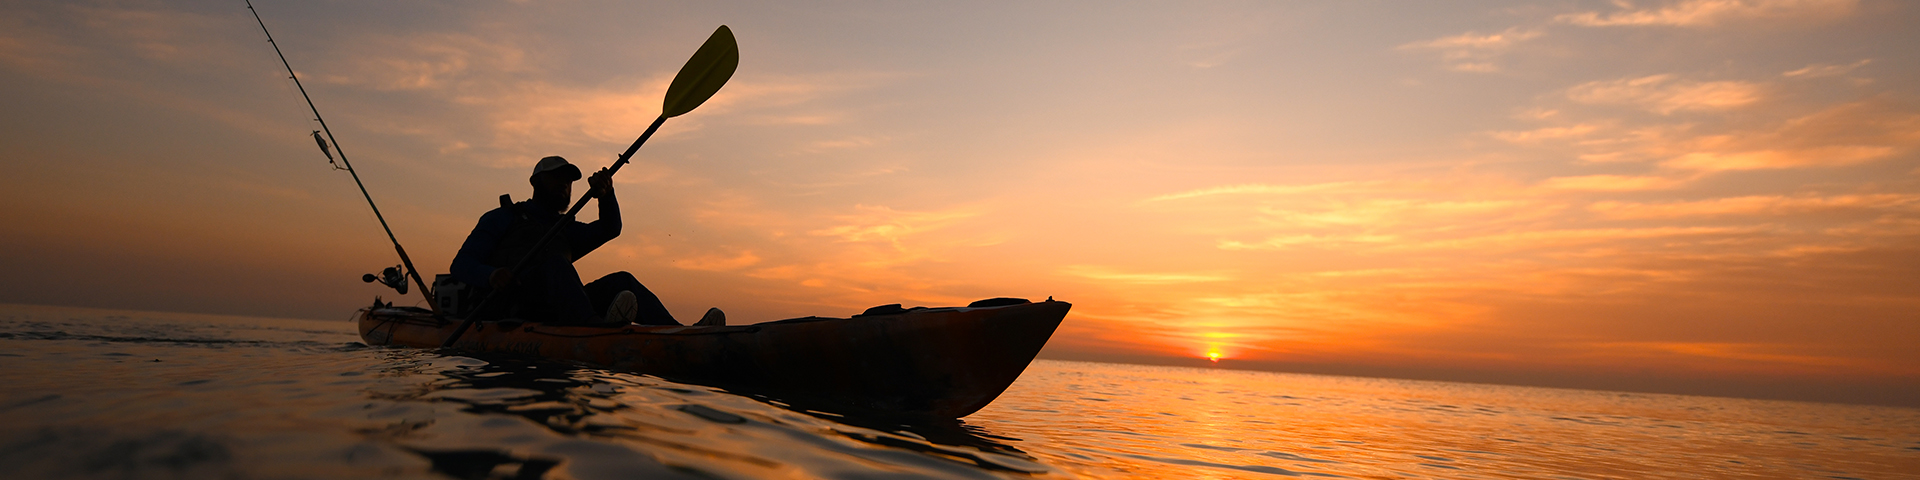 Kayaks: Trident 11 by Ocean Kayak - Image 4423